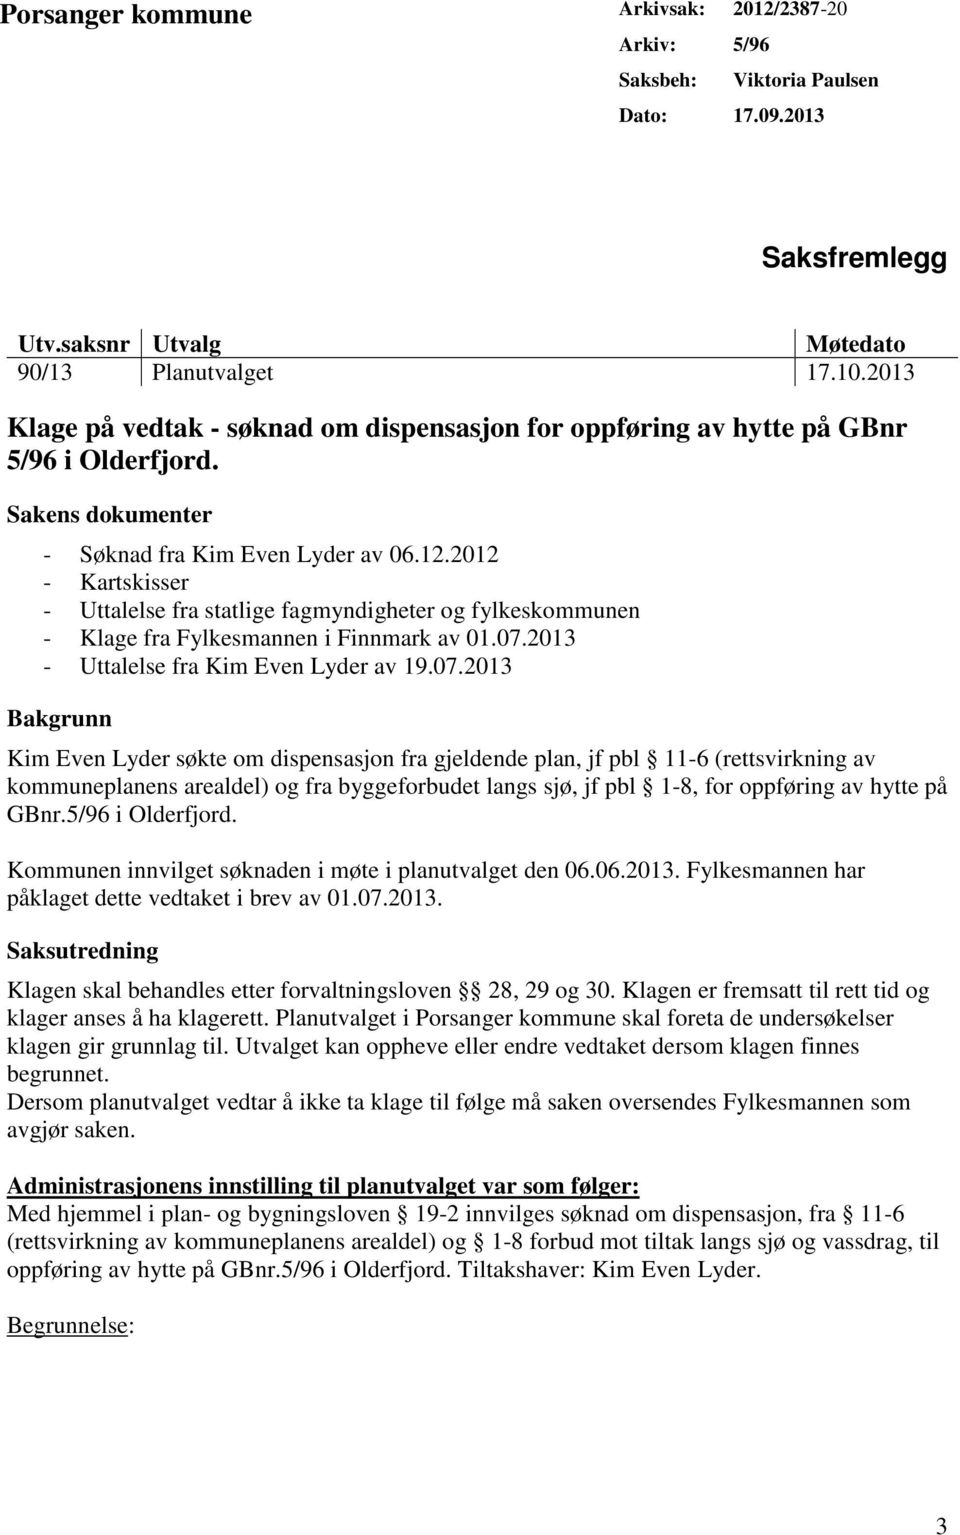 2012 - Kartskisser - Uttalelse fra statlige fagmyndigheter og fylkeskommunen - Klage fra Fylkesmannen i Finnmark av 01.07.